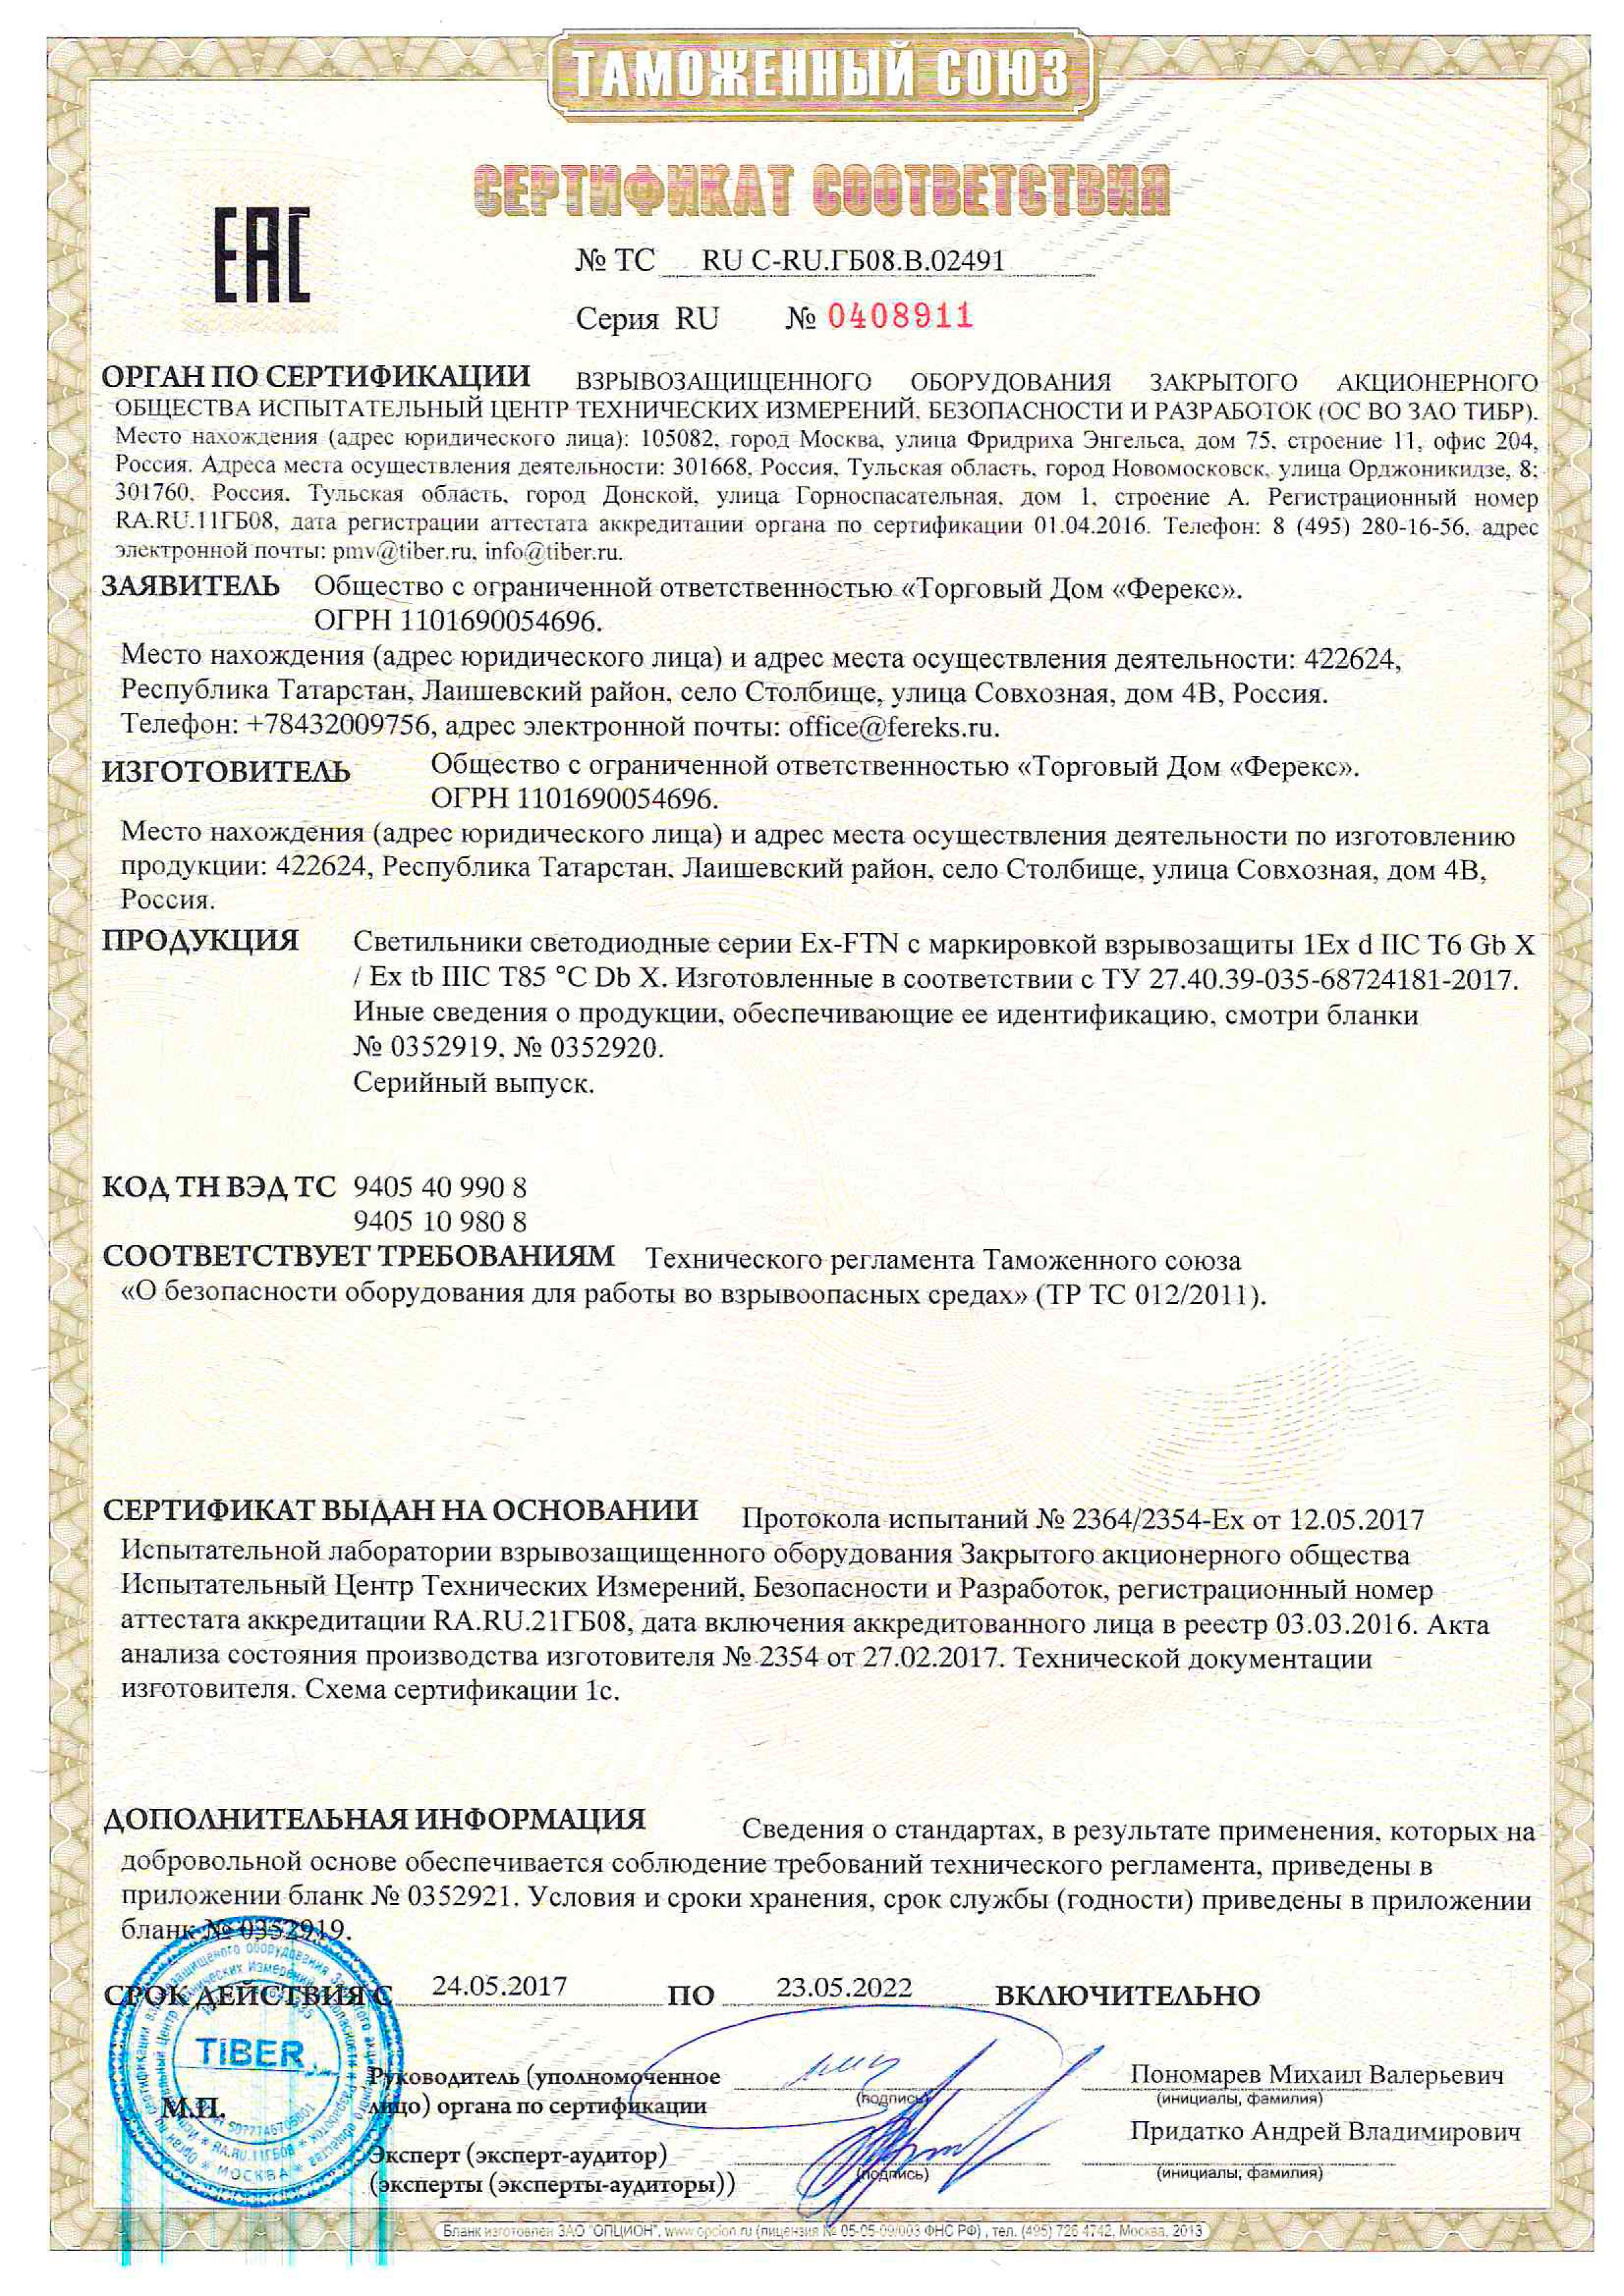 Сертификат таможенного союза на светильник FLT, FTN, прожектор FFL